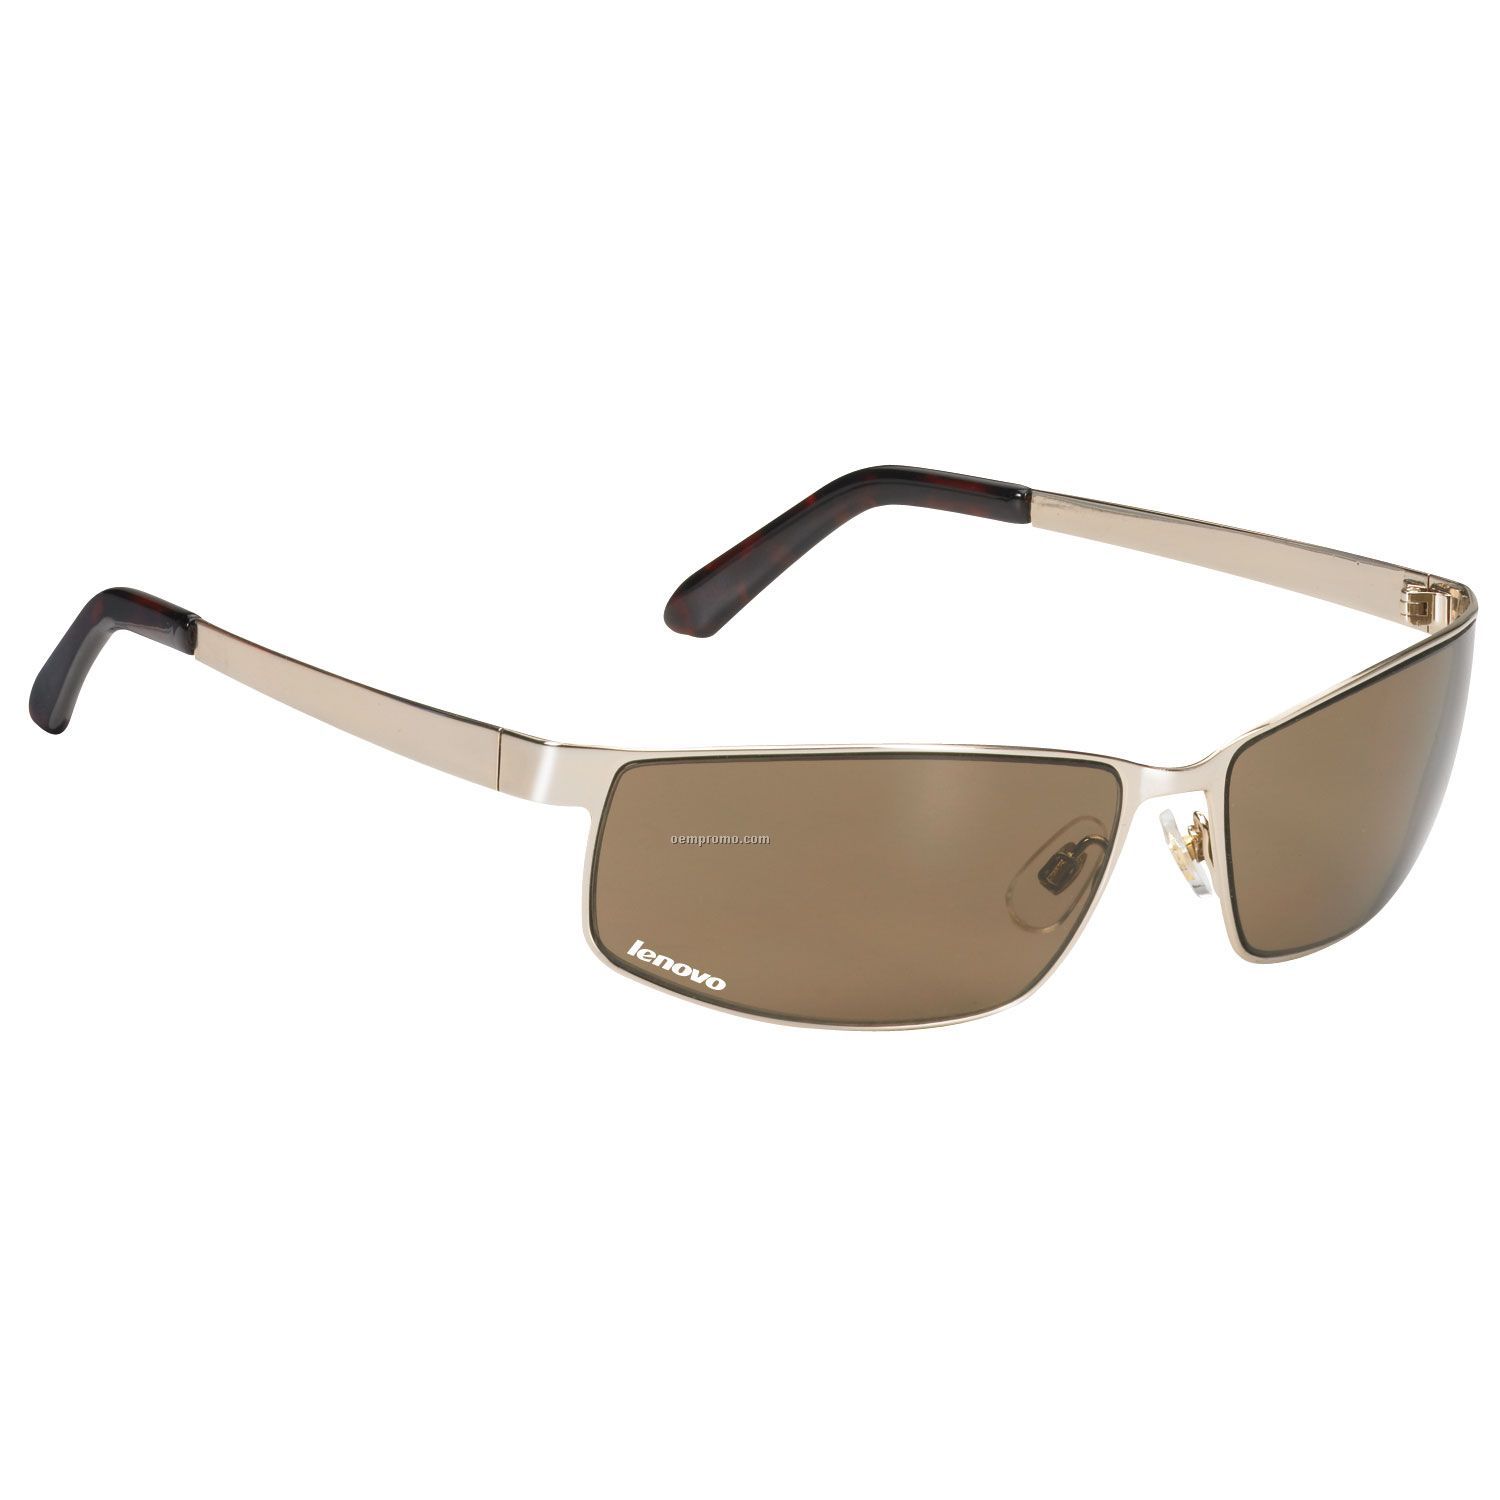 Rio Metals South Beach Shiny Brown Metal Frame Sunglasses